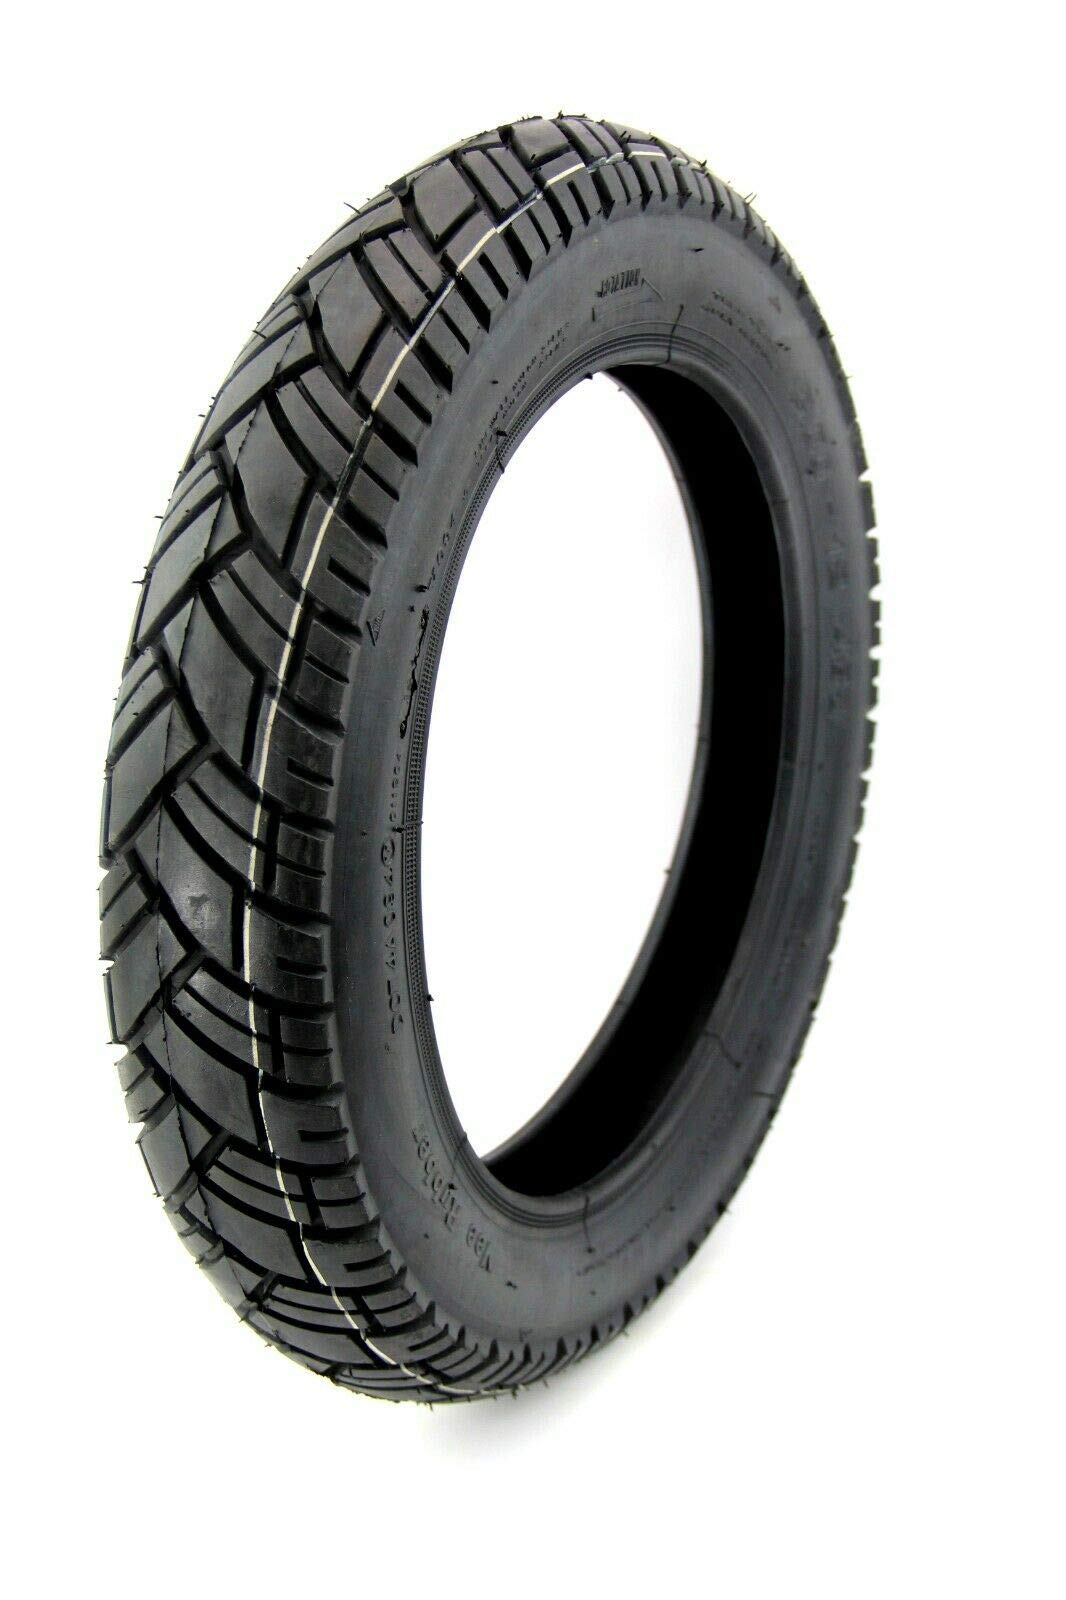 Vee Rubber Reifen 2,75 x 16 Zoll Profil VRM 094 Straßenprofil, 43J für Simson S50, S51, S70, S53, KR51, SR4-4 von BISOMO